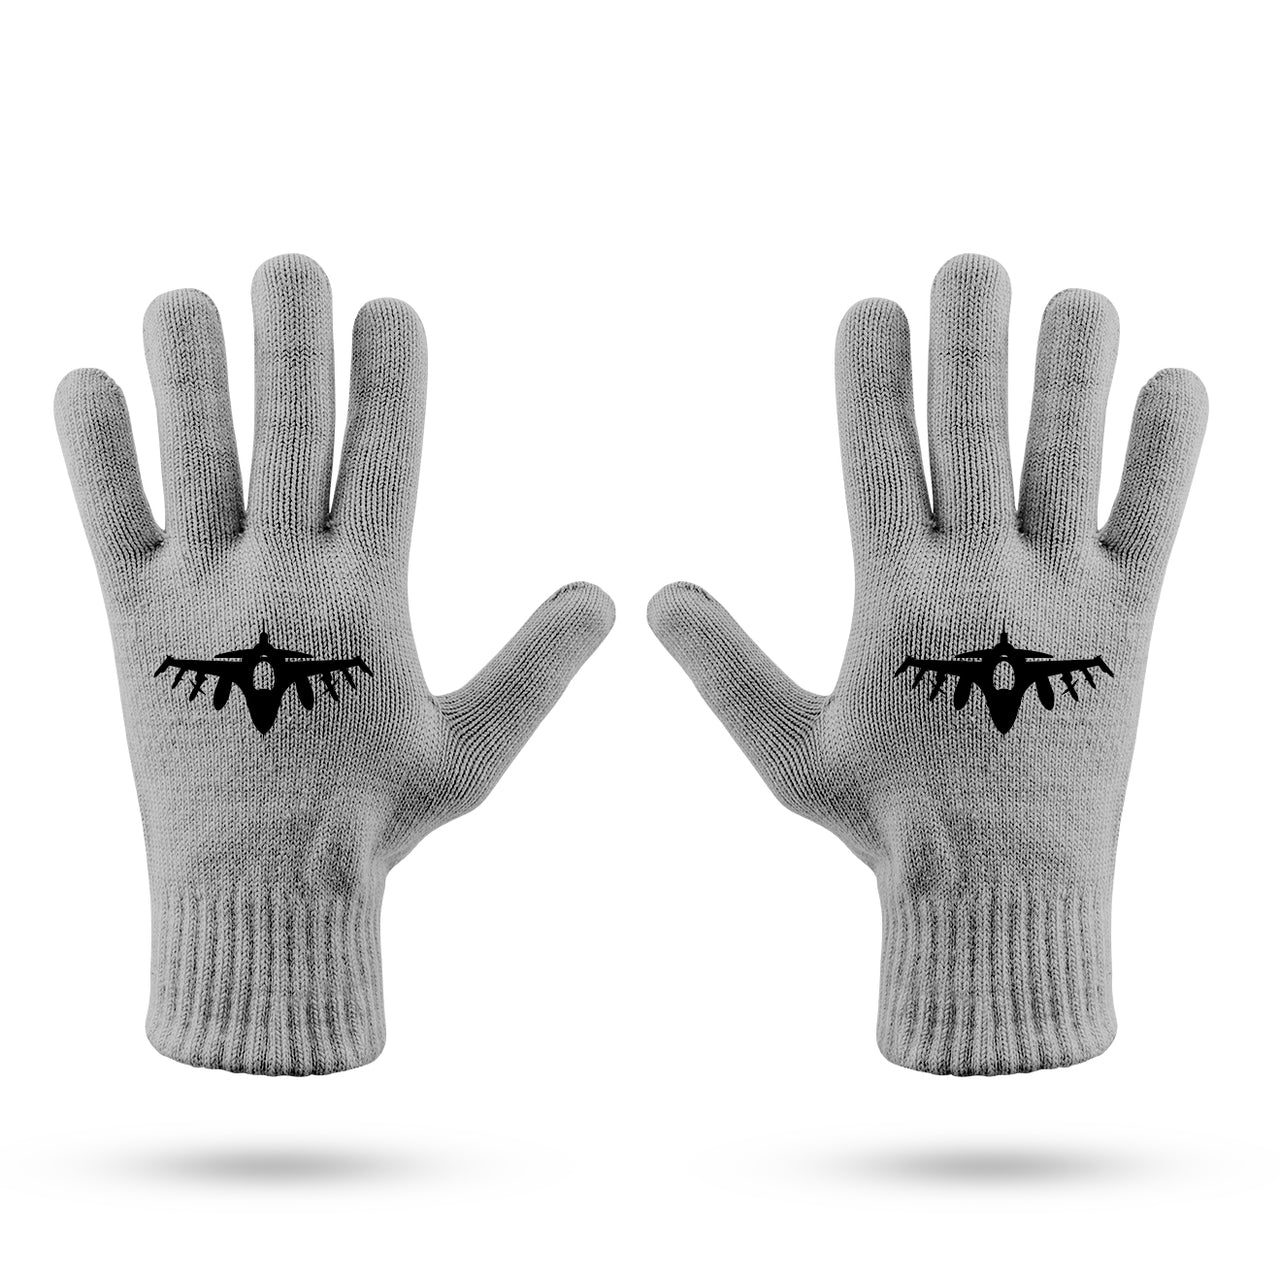 Fighting Falcon F16 Silhouette Designed Gloves